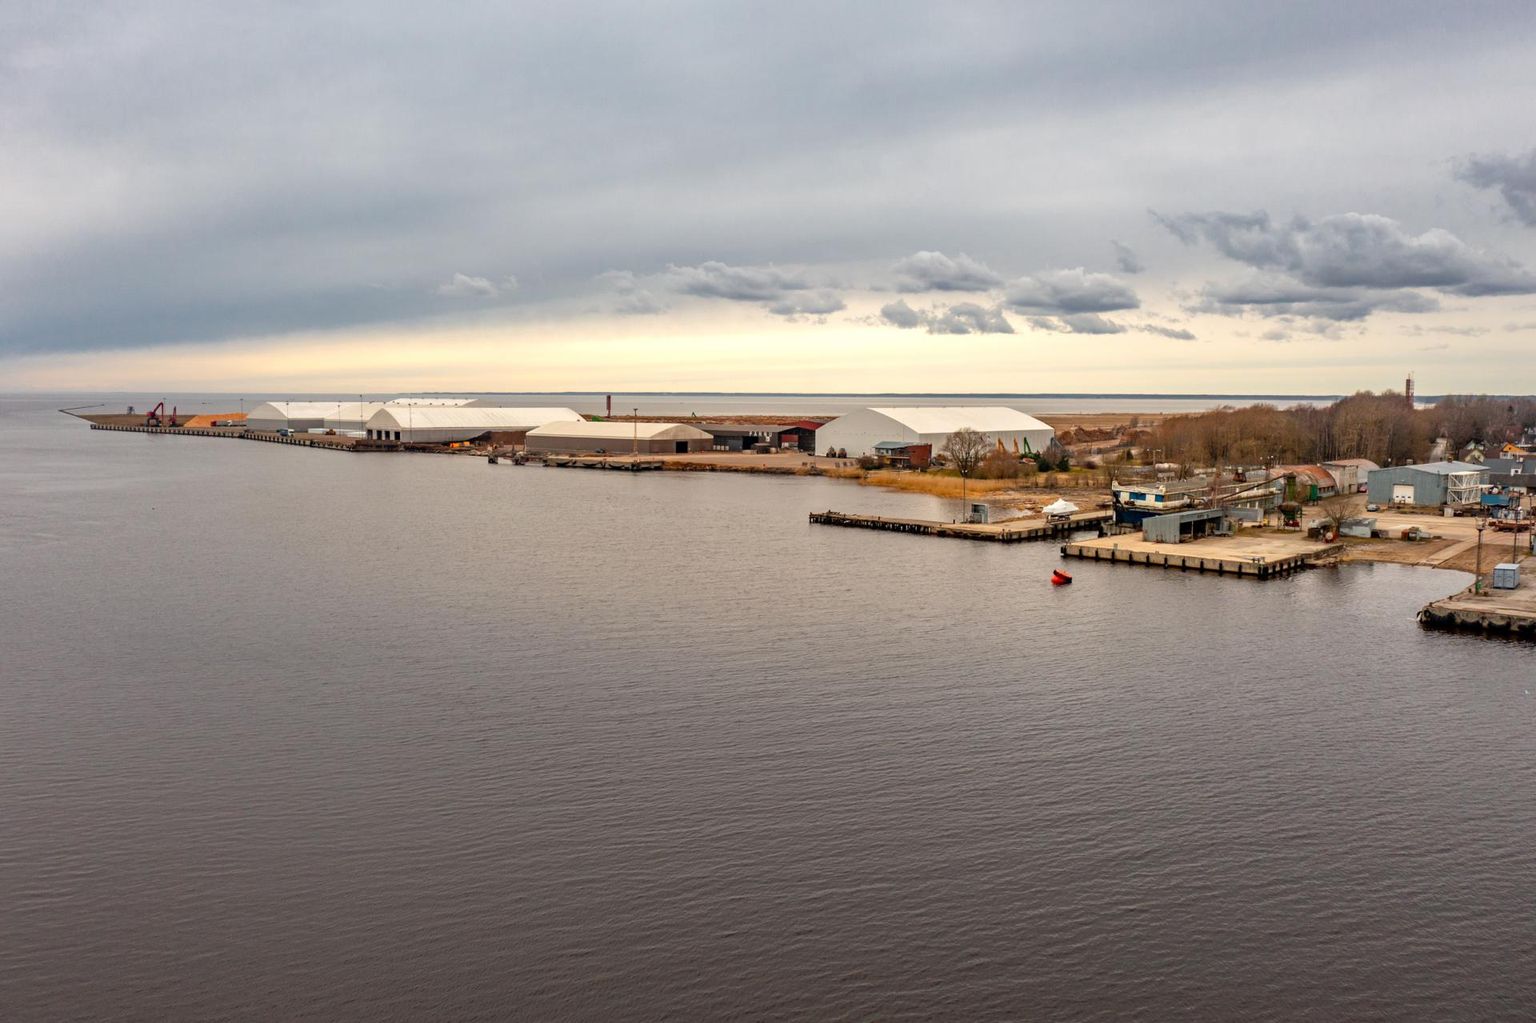 Tallinna ülikool töötab Pärnu sadama ja seda ümbritsevate randade näitel välja metoodika laevateedele kuhjuvate rannasetete mahu ja kvaliteedi määramiseks ning nende kasutamiseks randade taastamisel.